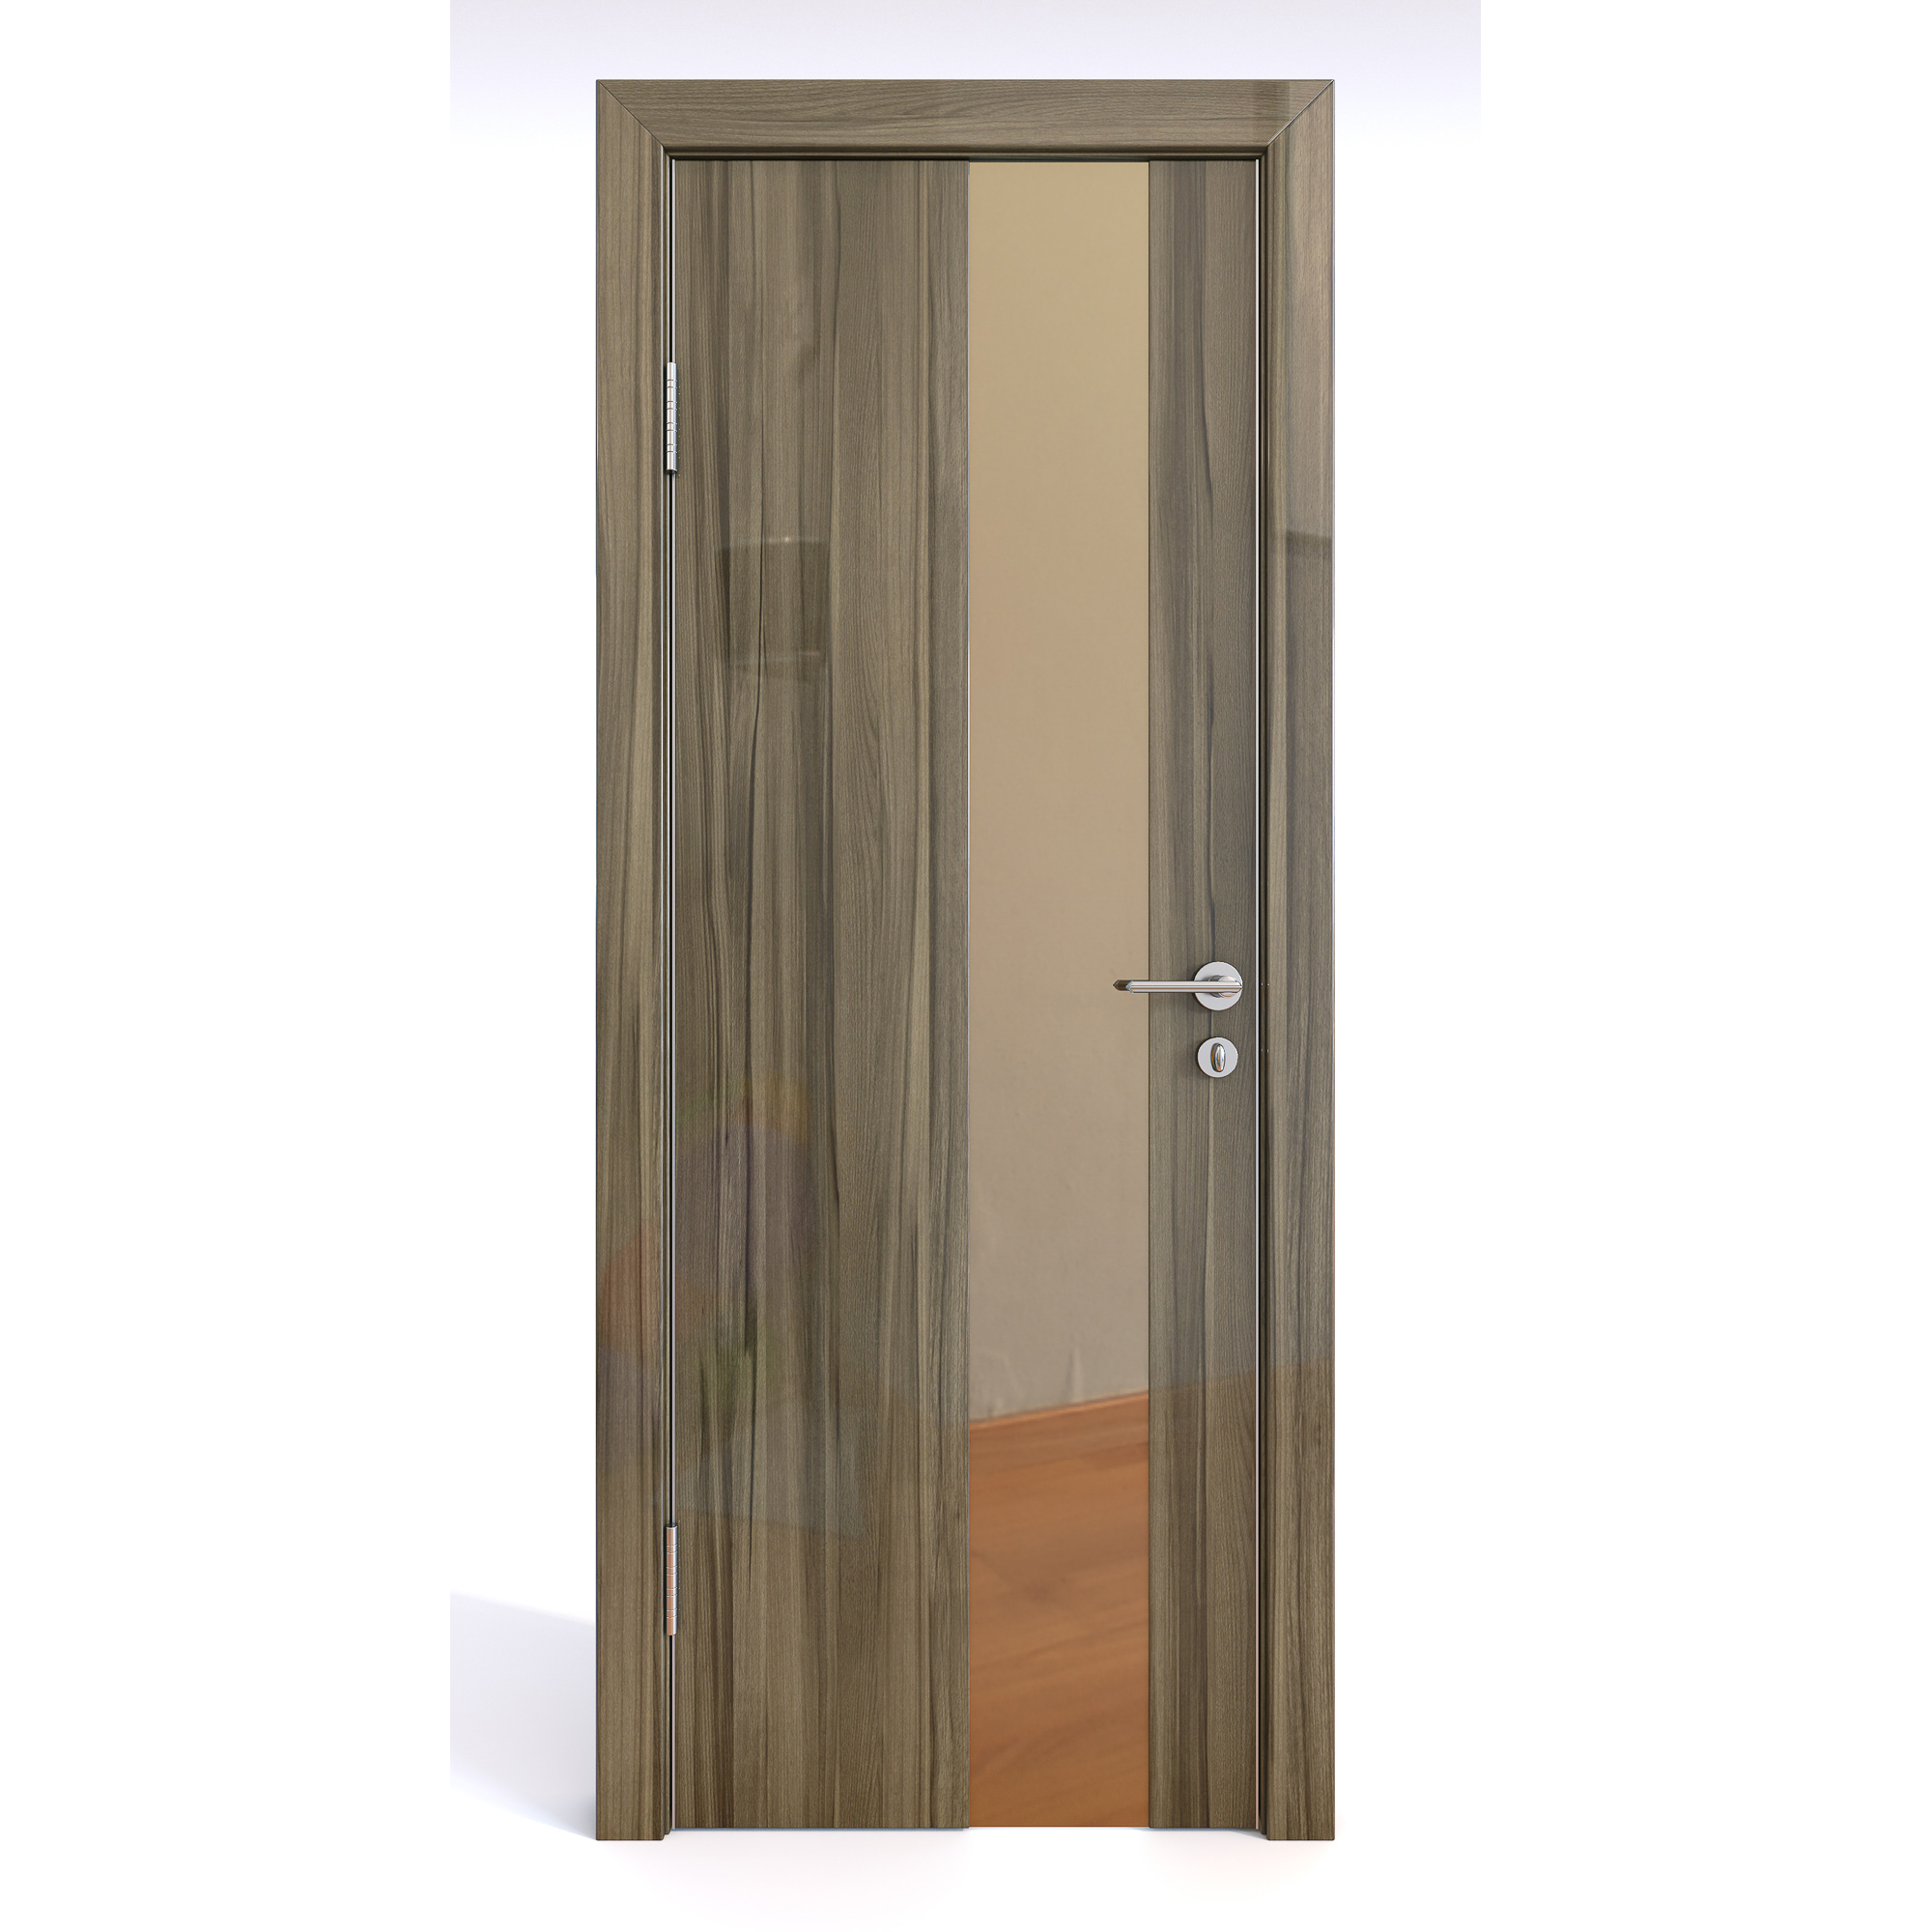 фото Межкомнатная шумоизоляционная дверь до-604/2 сосна глянец/бронза 200х70 дверная линия